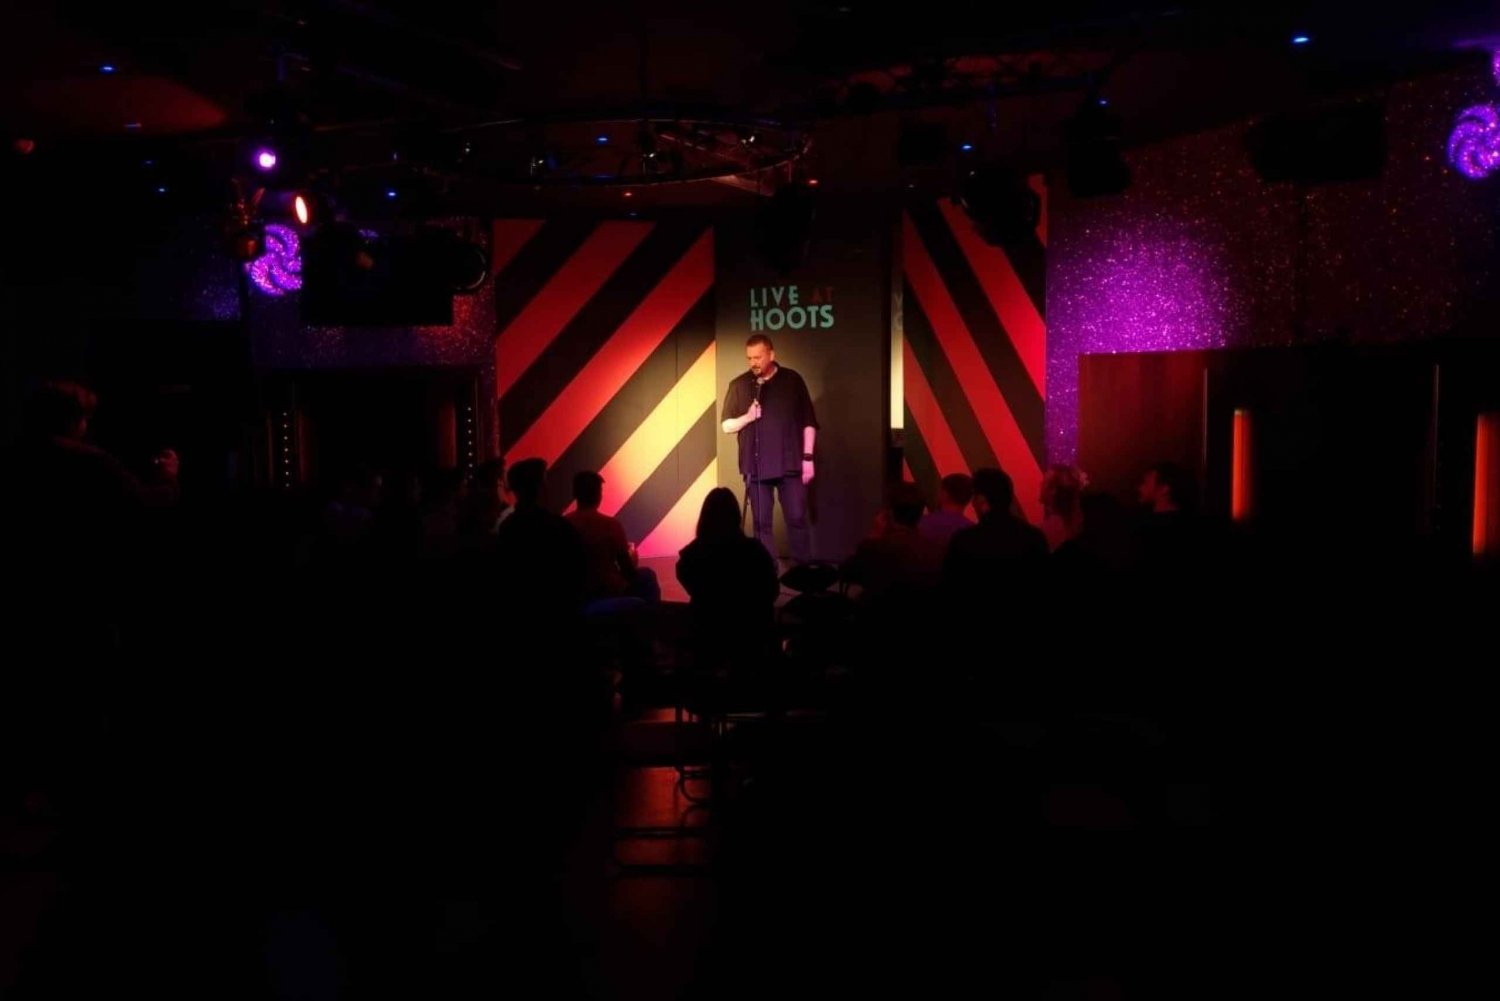 Edimburgo: Espectáculo escocés de stand up comedy en directo